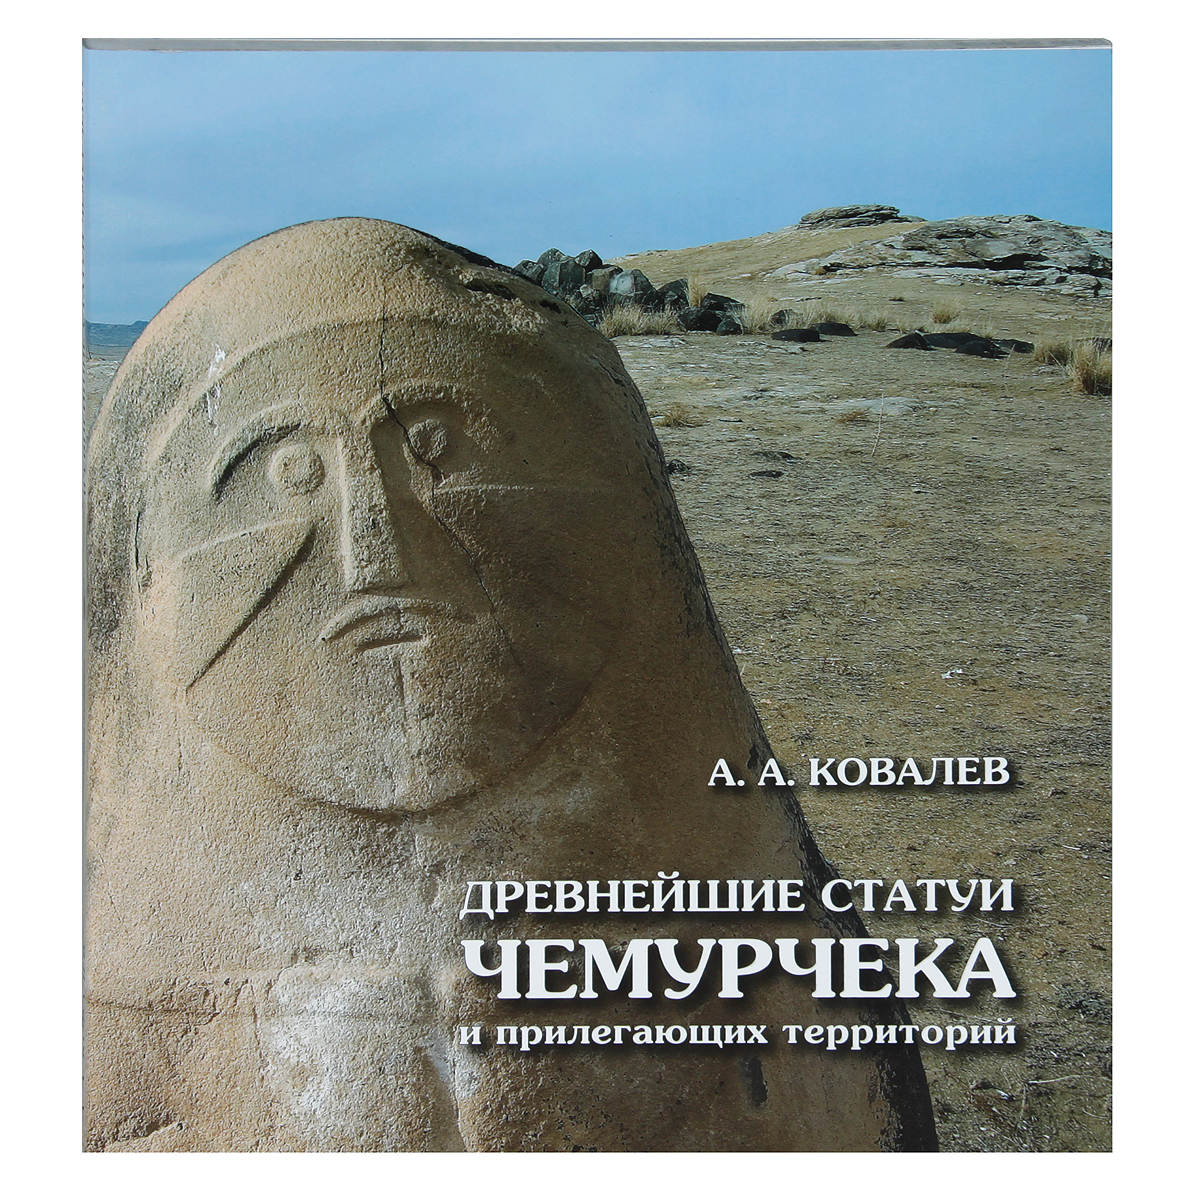 А. А. Ковалев - «Древнейшие статуи Чемурчека и прилегающих территорий»